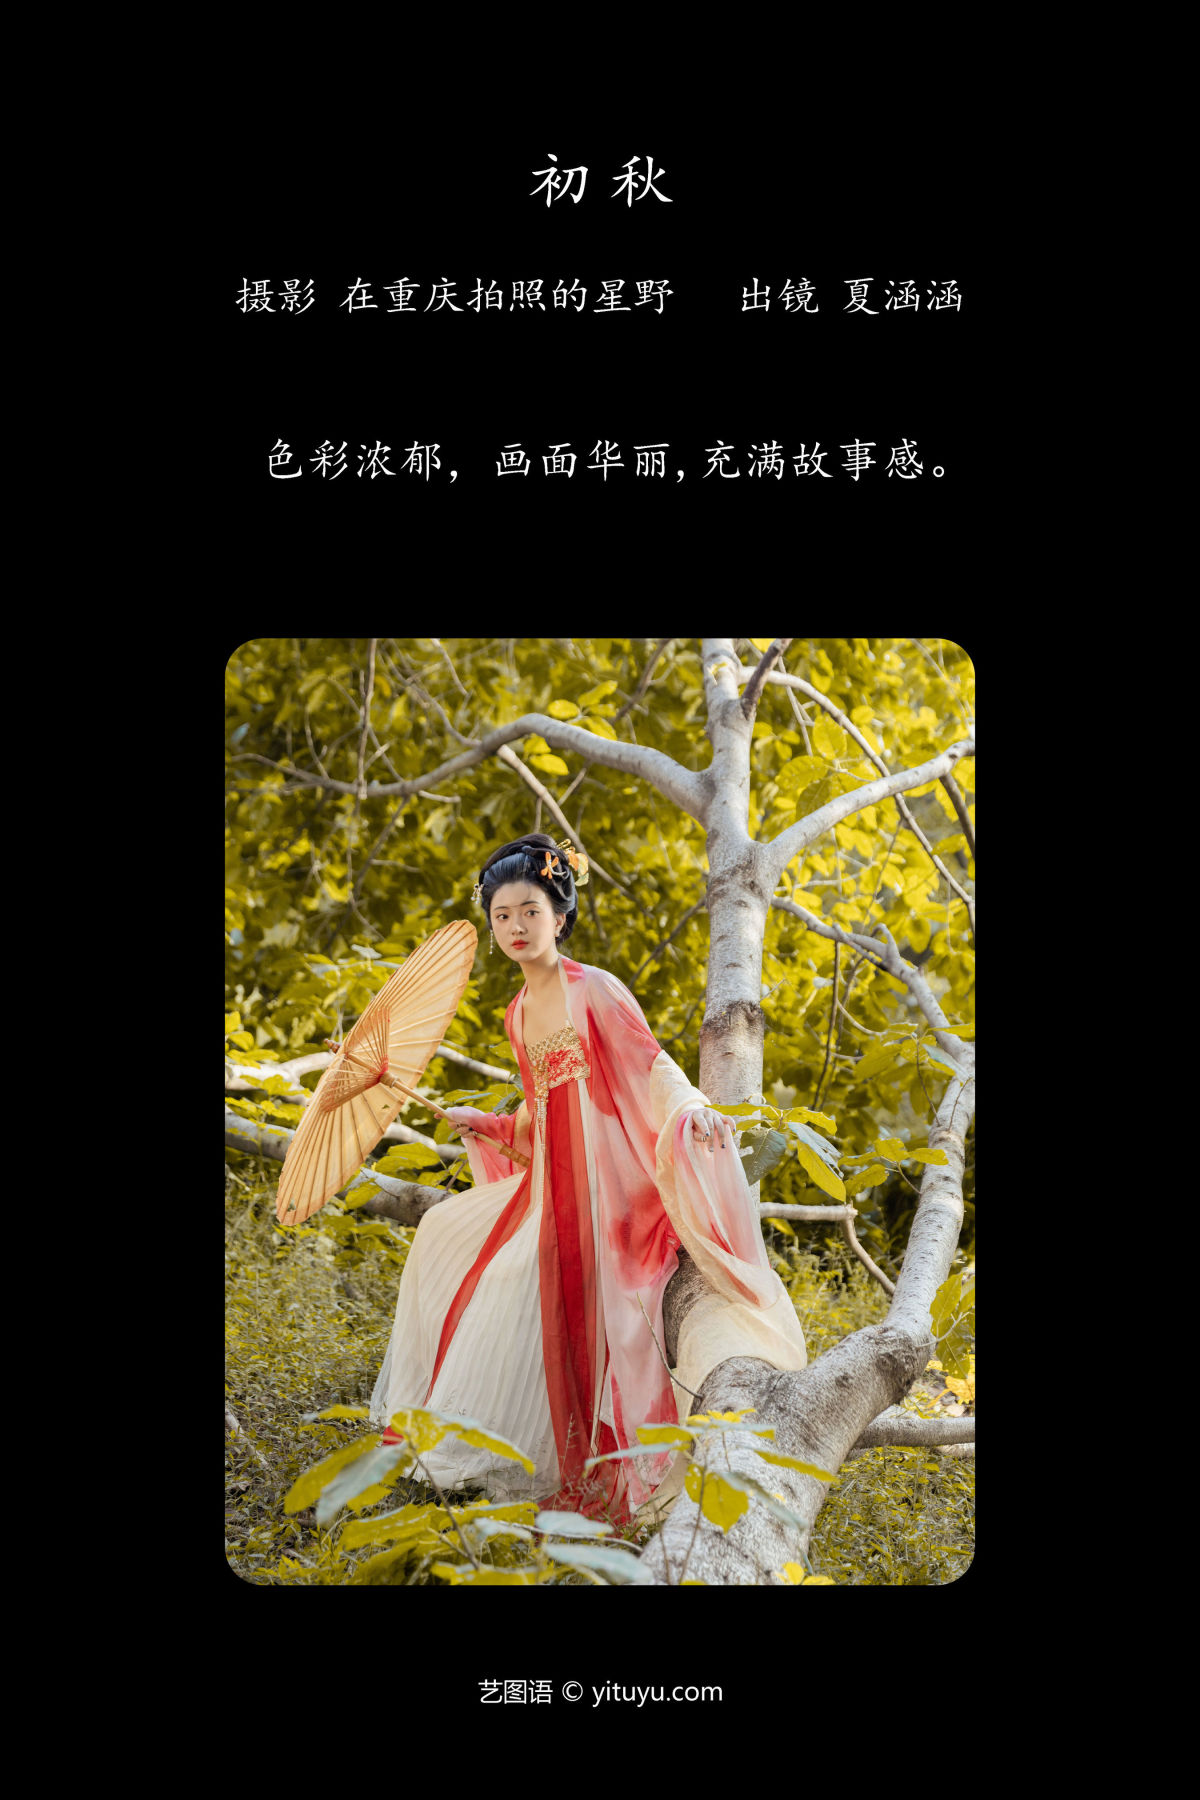 在重庆拍照的星野_夏涵涵《初秋》美图作品图片2